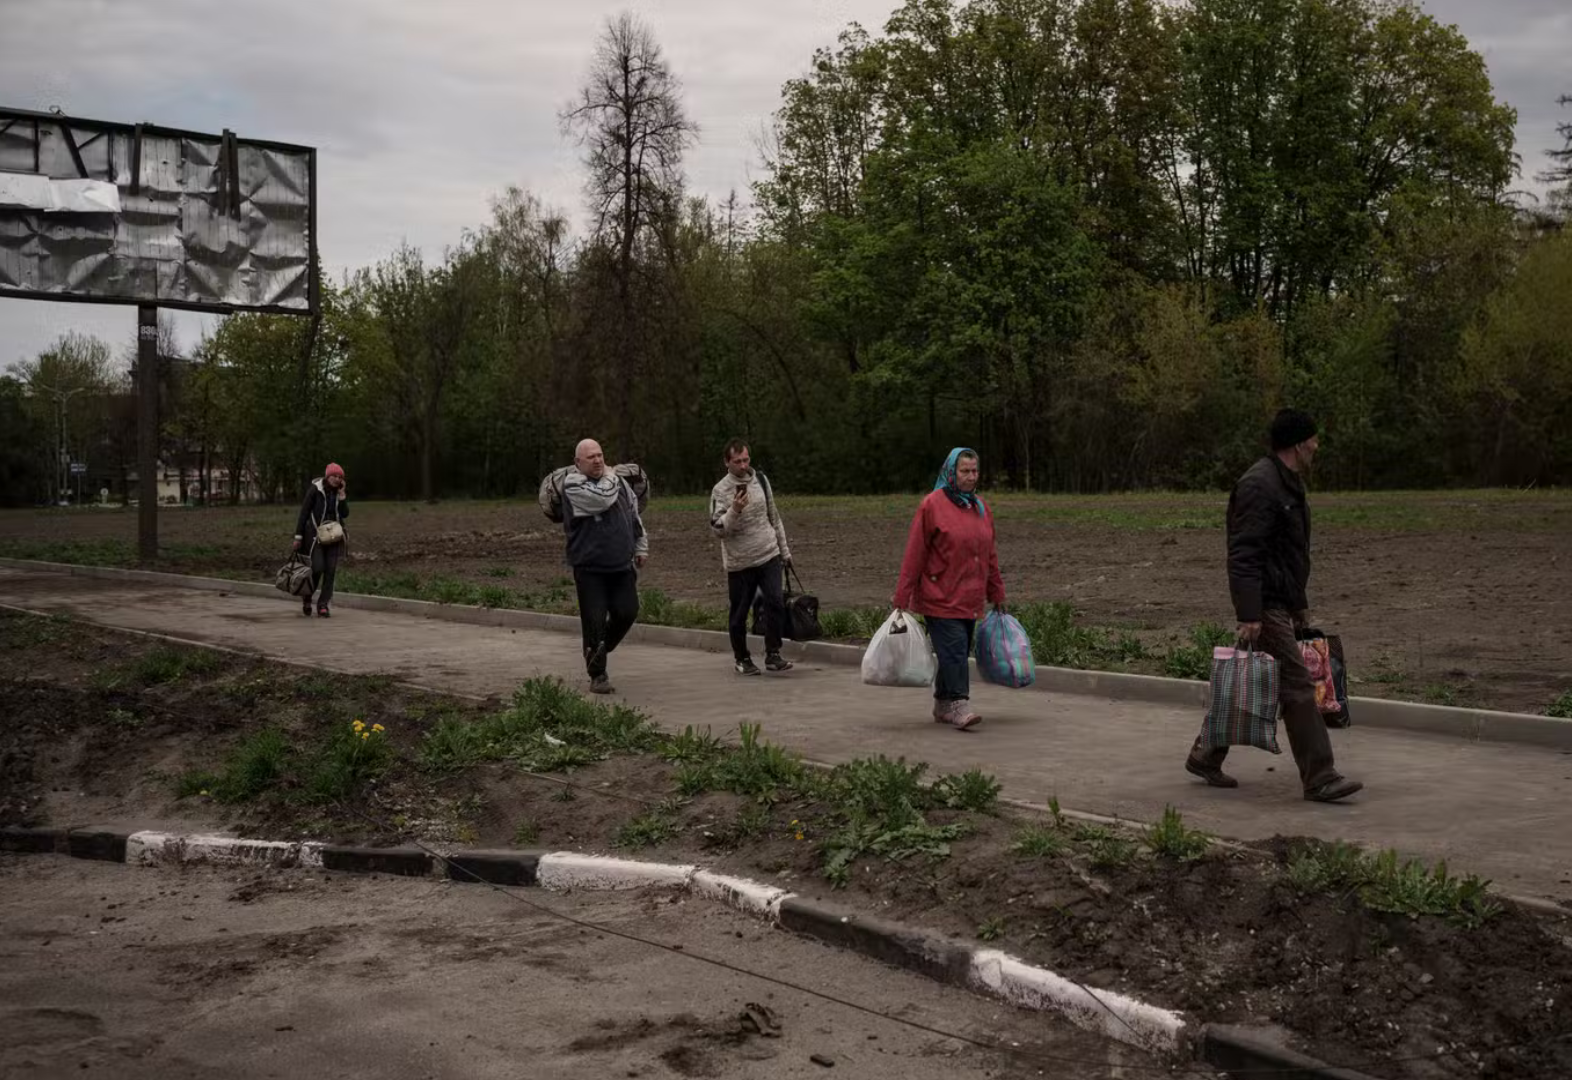 تم إجلاء مئات السكان إلى خاركيف من القرية التي كانت تحت الاحتلال الروسي لأكثر من شهر